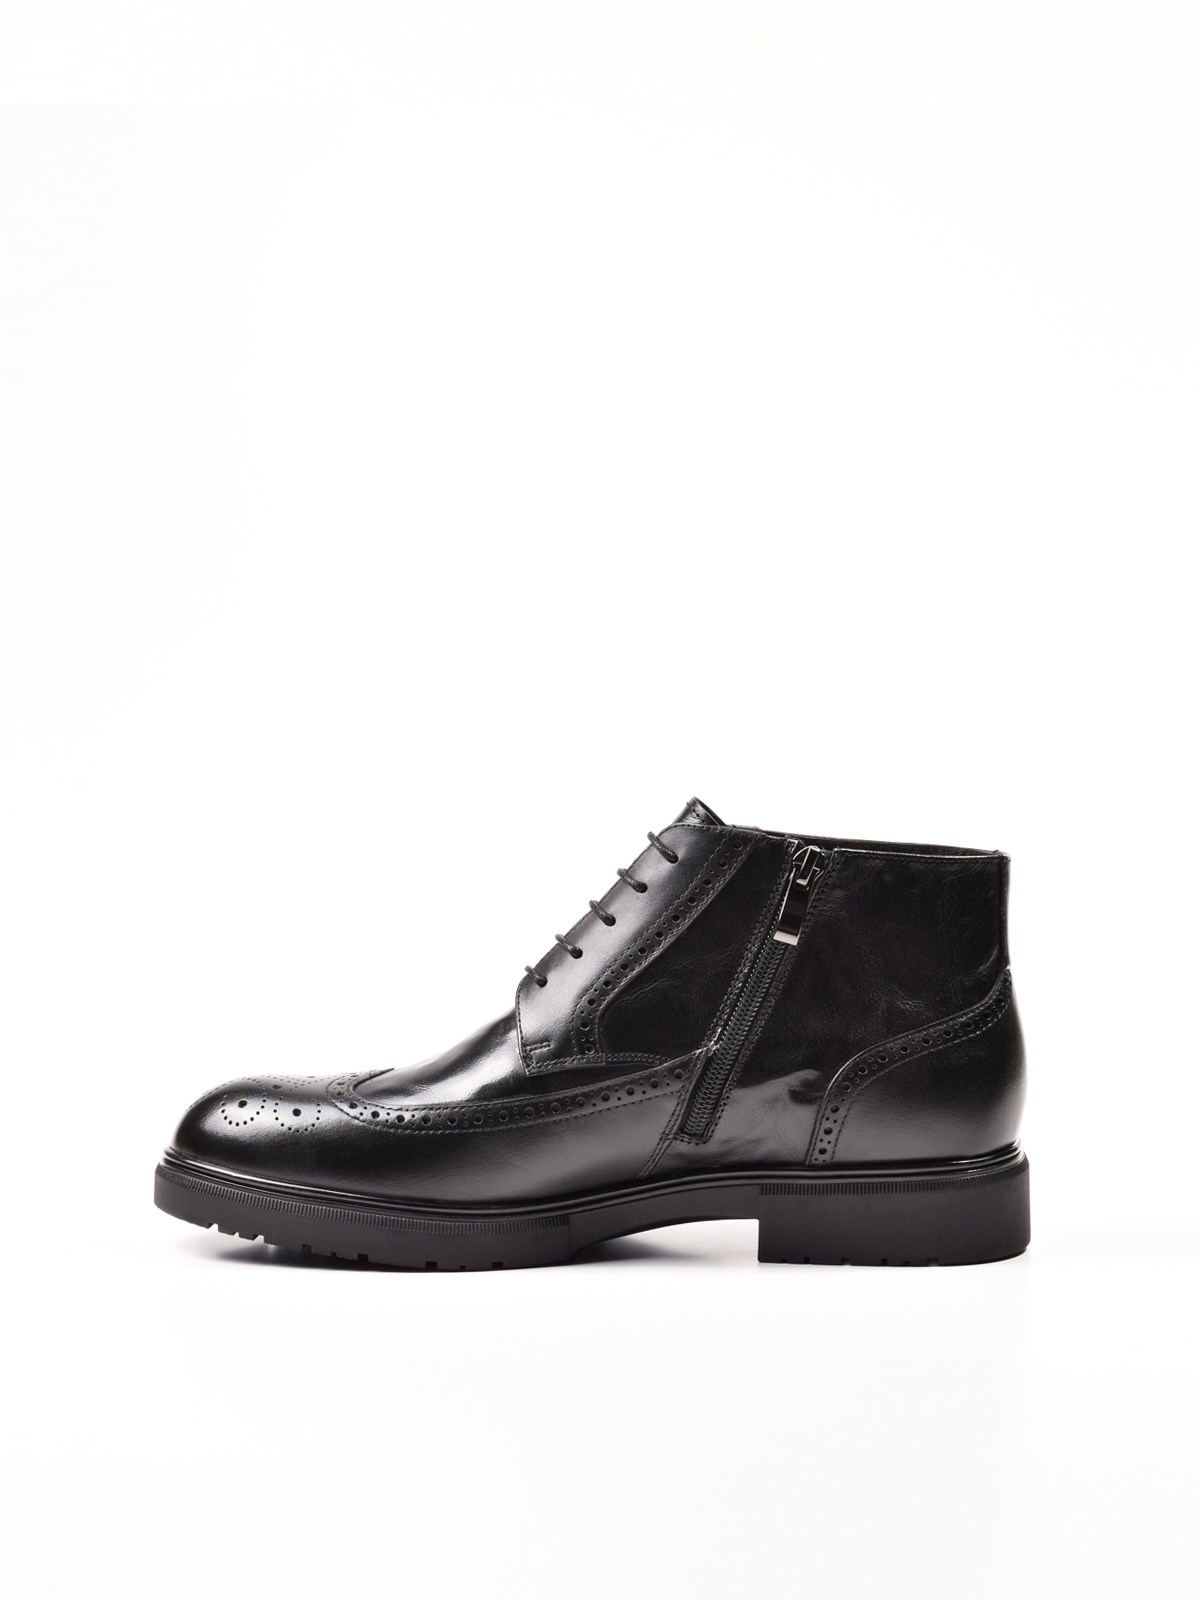 Мужские зимние ботинки черного цвета с брогированием Chewhite купить вКазани от производителя